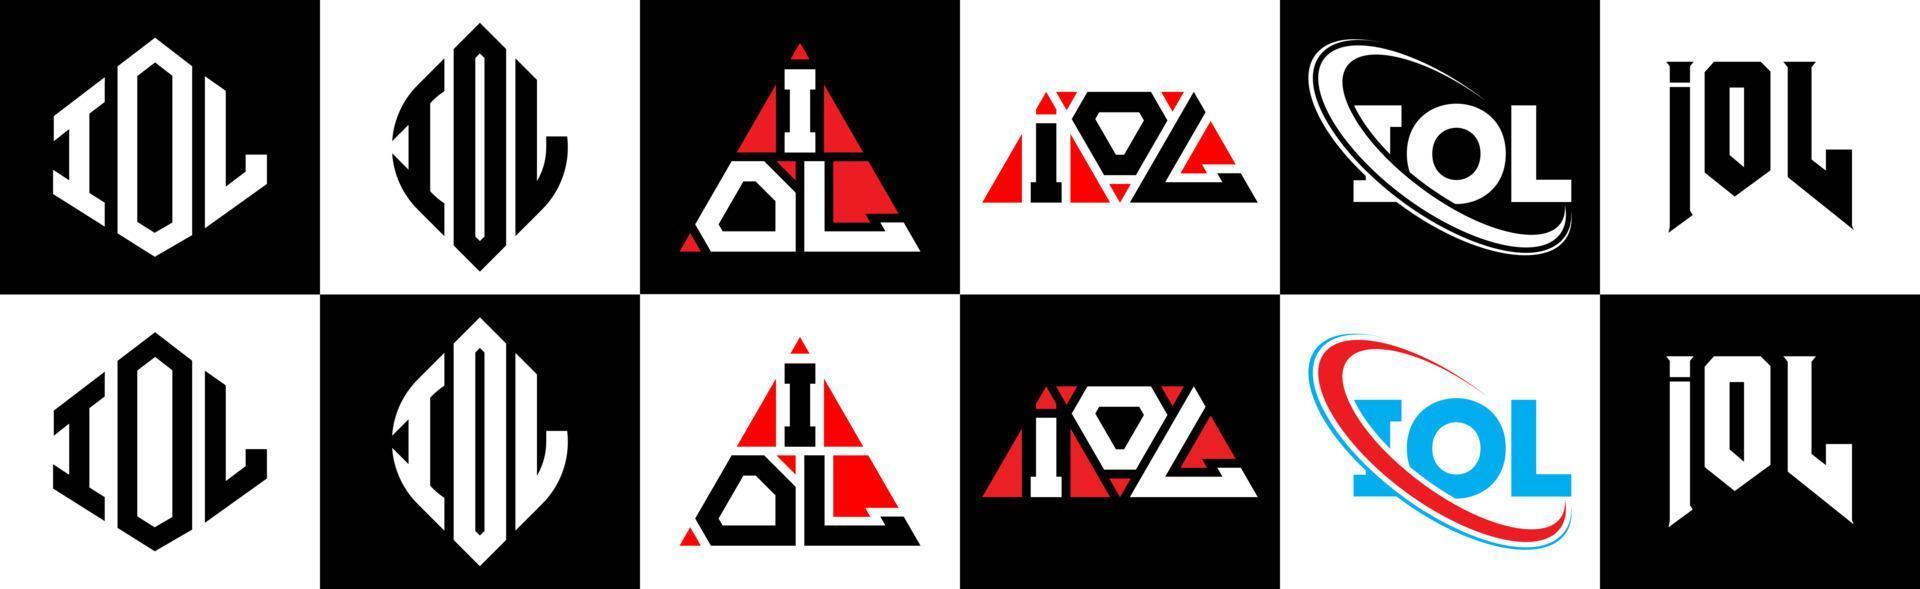 Iol-Buchstaben-Logo-Design in sechs Stilen. iol polygon, kreis, dreieck, sechseck, flacher und einfacher stil mit schwarz-weißem buchstabenlogo in einer zeichenfläche. Iol minimalistisches und klassisches Logo vektor